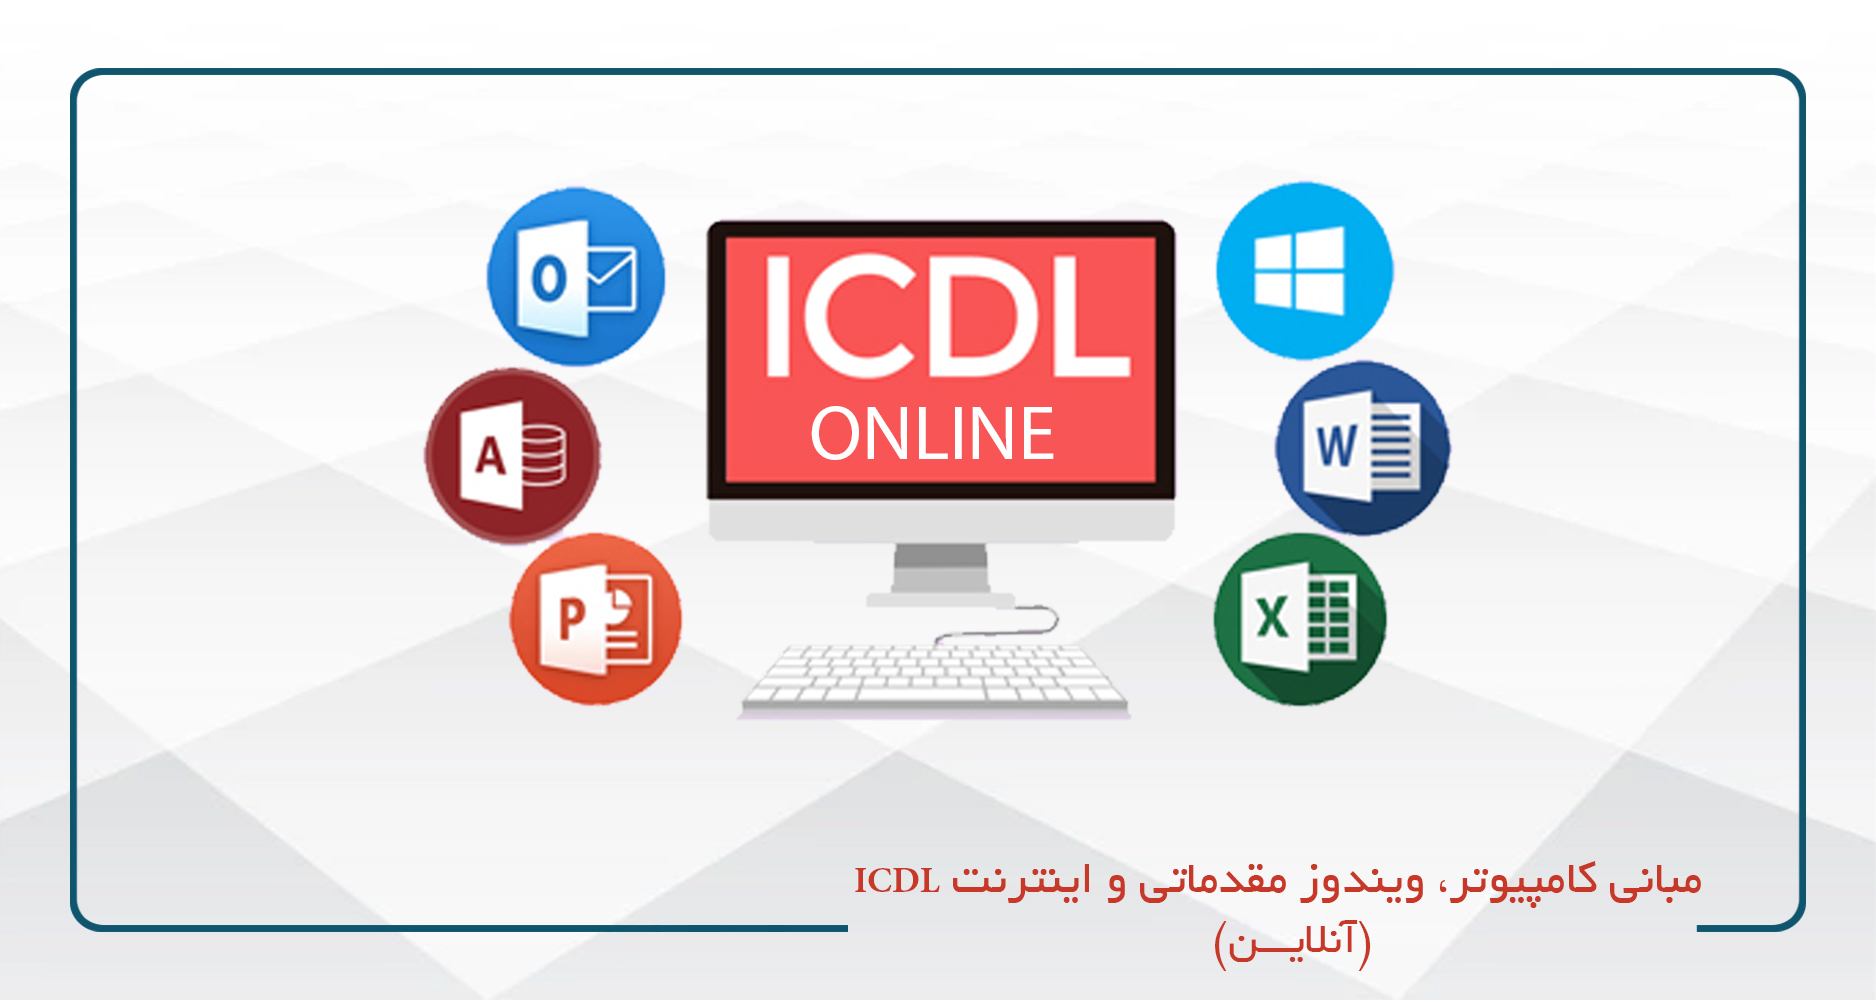 مبانی کامپیوتر،ویندوز مقدماتی و اینترنت (ICDL١) - آنلاين - جمعه 13-9